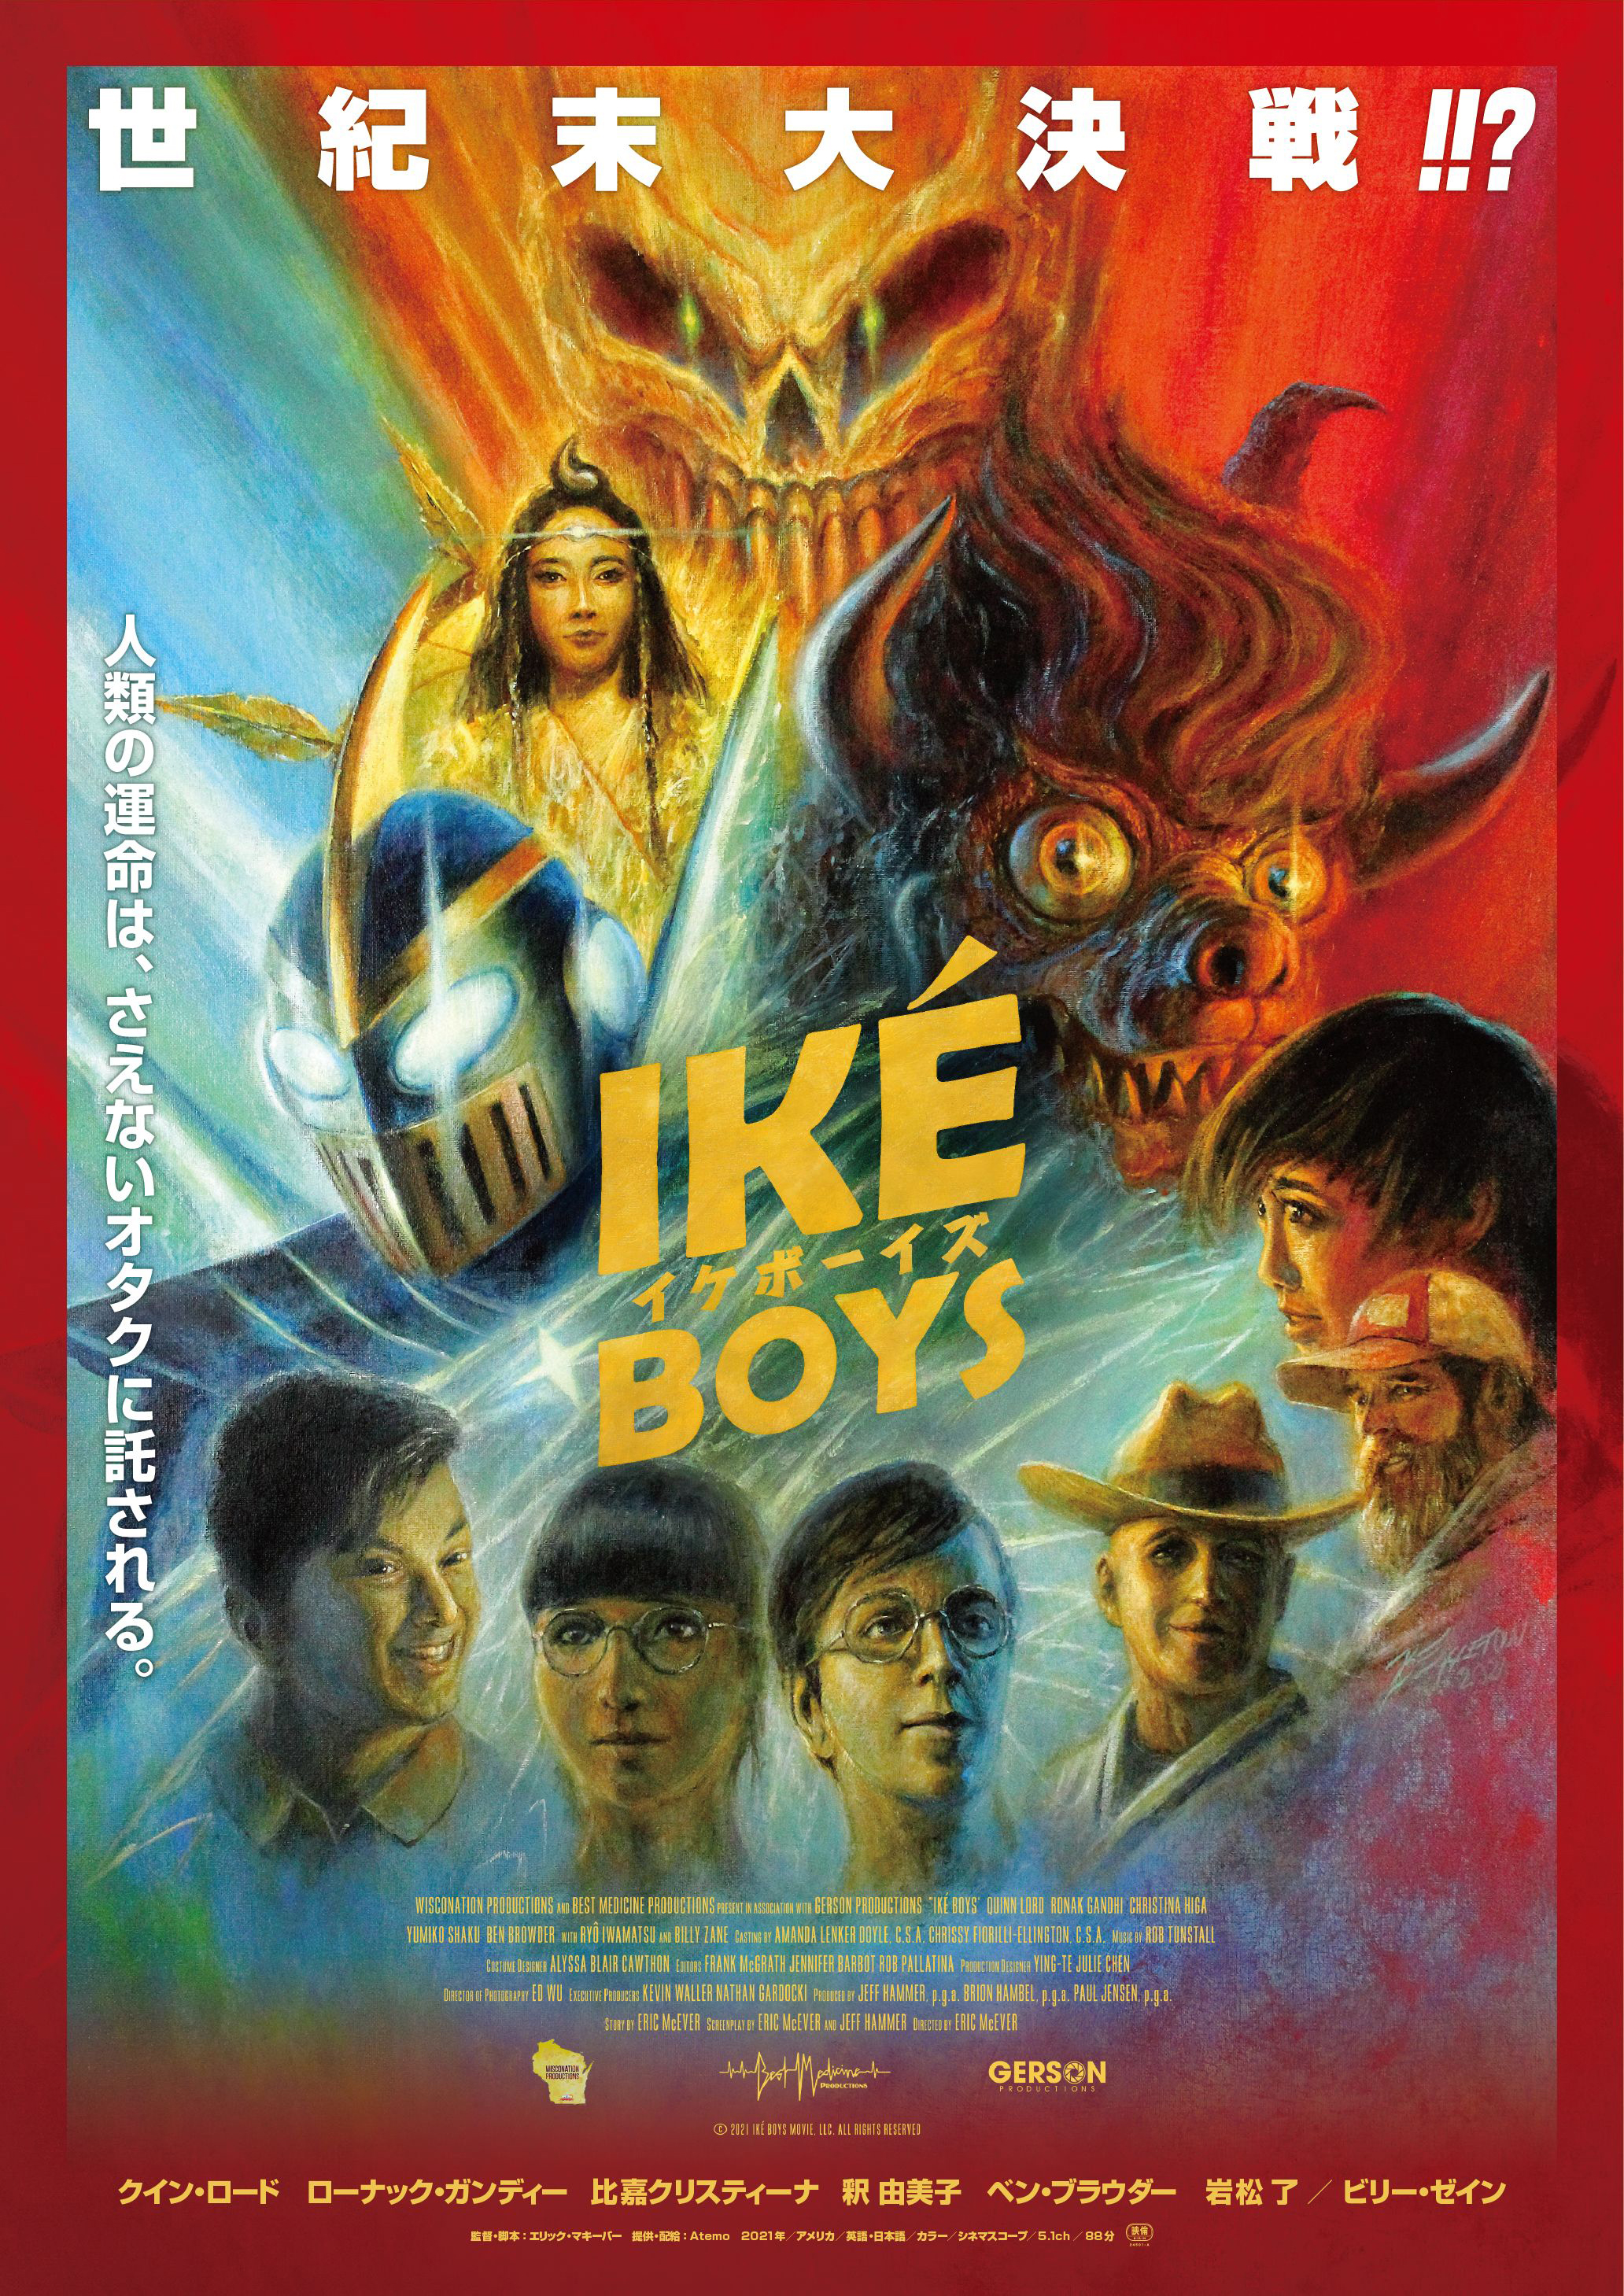 映画「Ikè Boys イケボーイズ」公式サイト